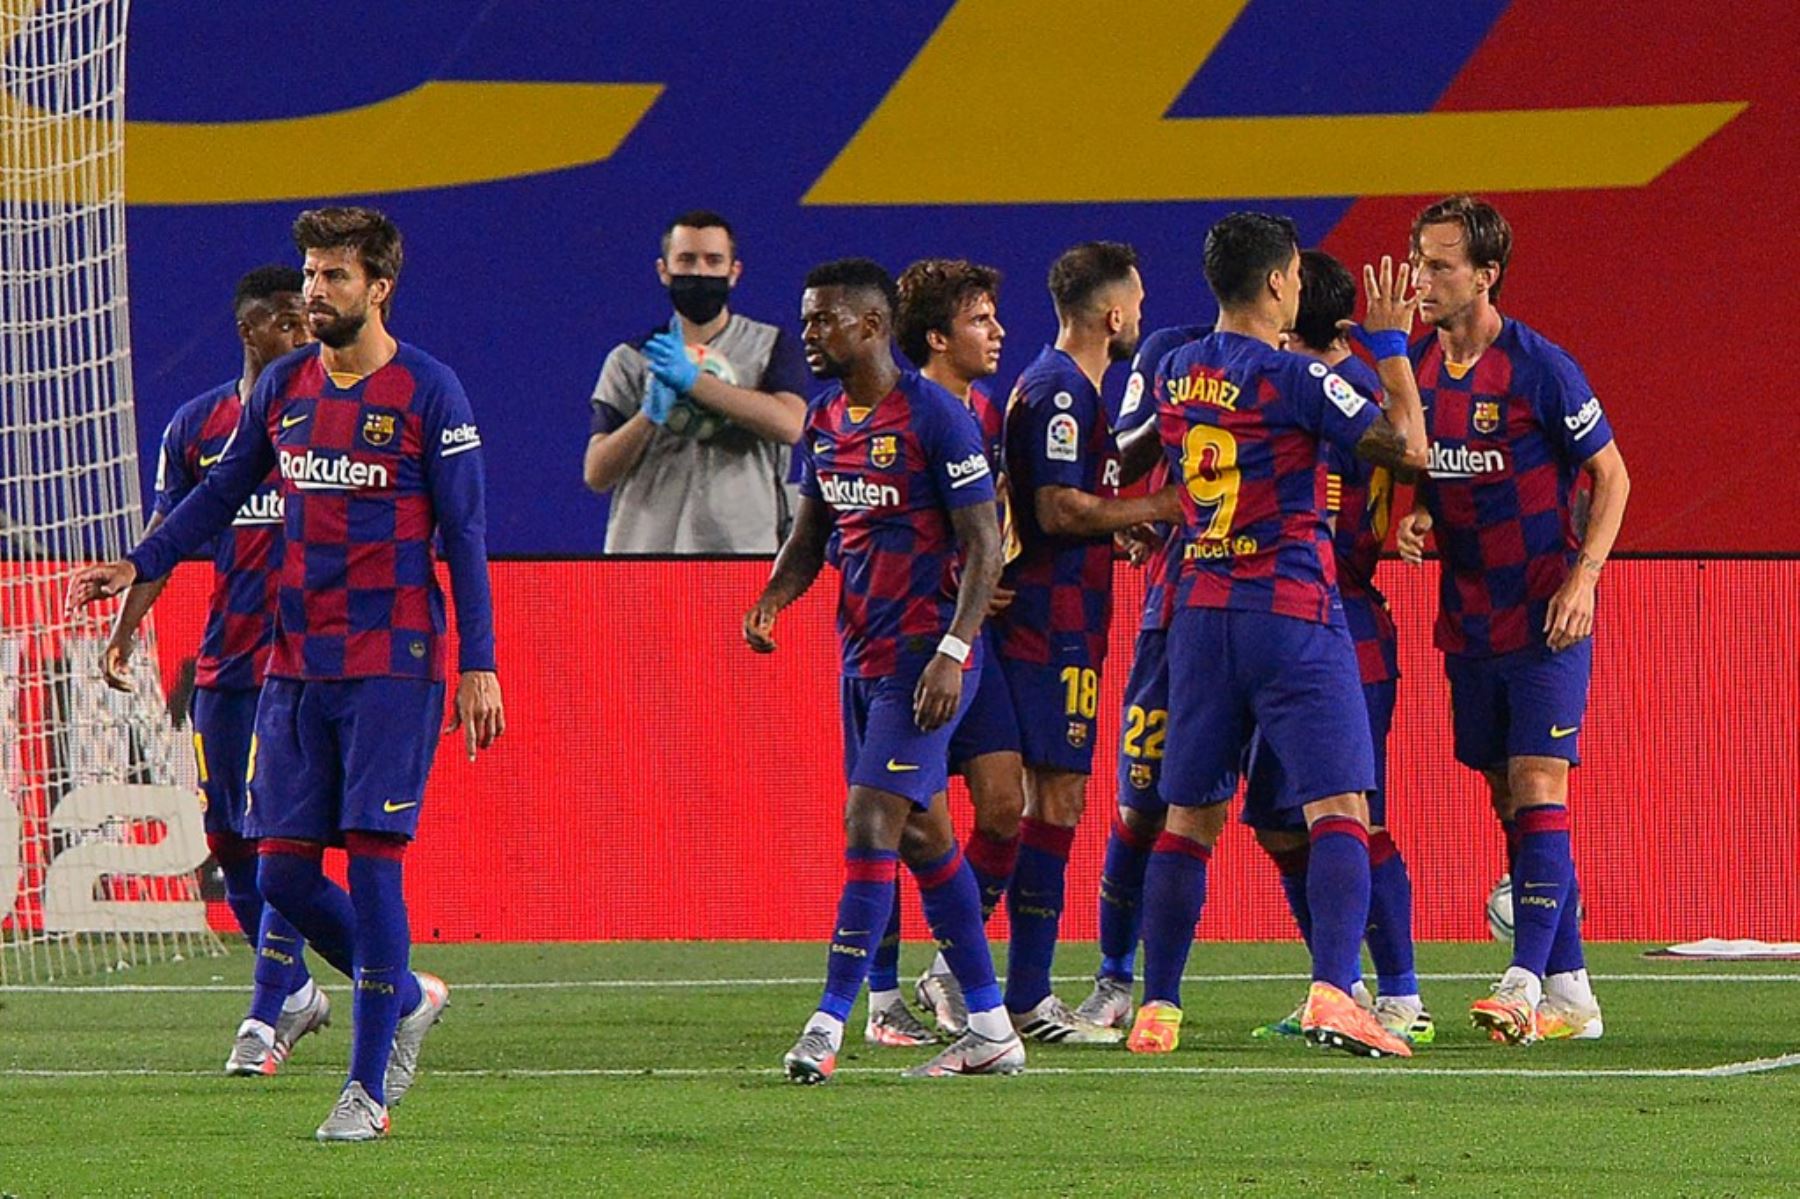 Barcelona ganó 1-0 en su campo al athletic de Bilbao (10º) este martes para recuperar provisionalmente el liderato en la 31ª jornada liguera